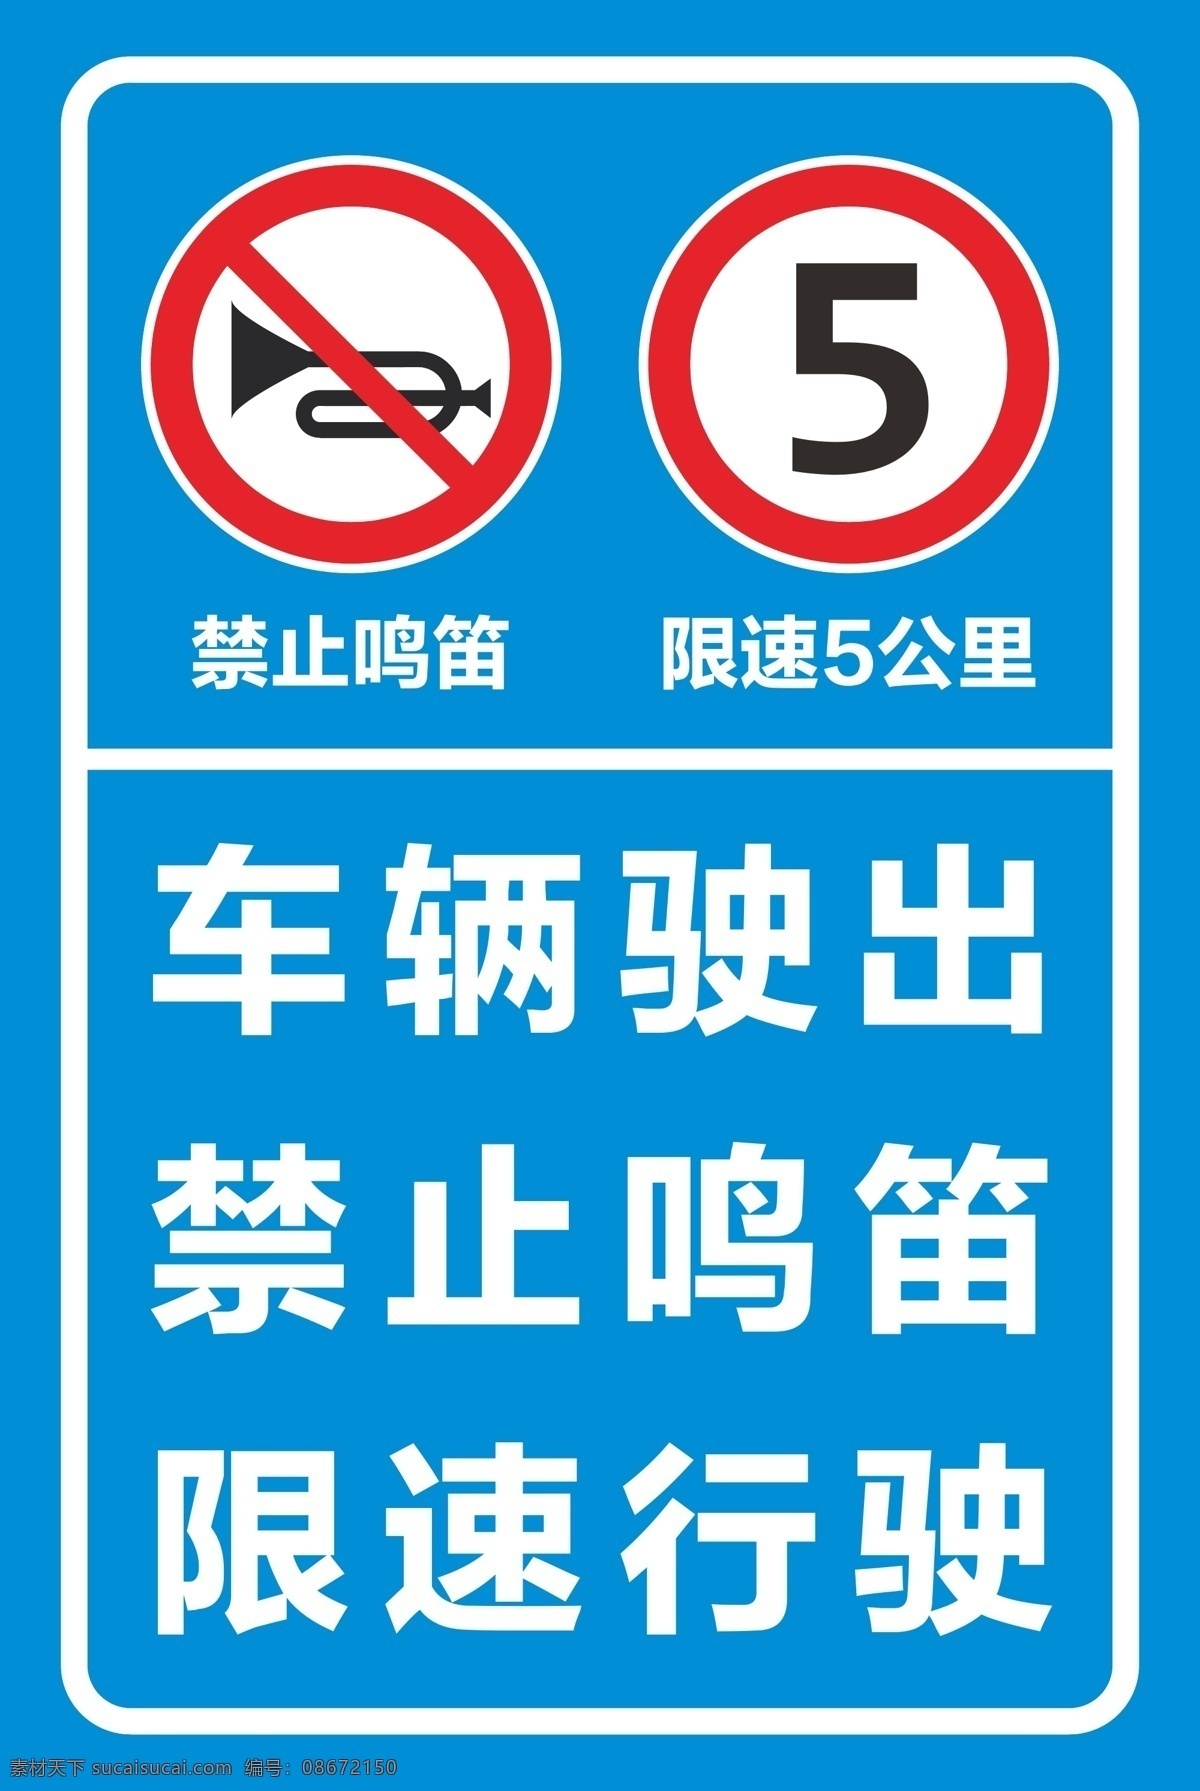 禁止 鸣笛 限速 公里 牌 禁止鸣笛 5公里 标牌 铝牌 标志图标 公共标识标志